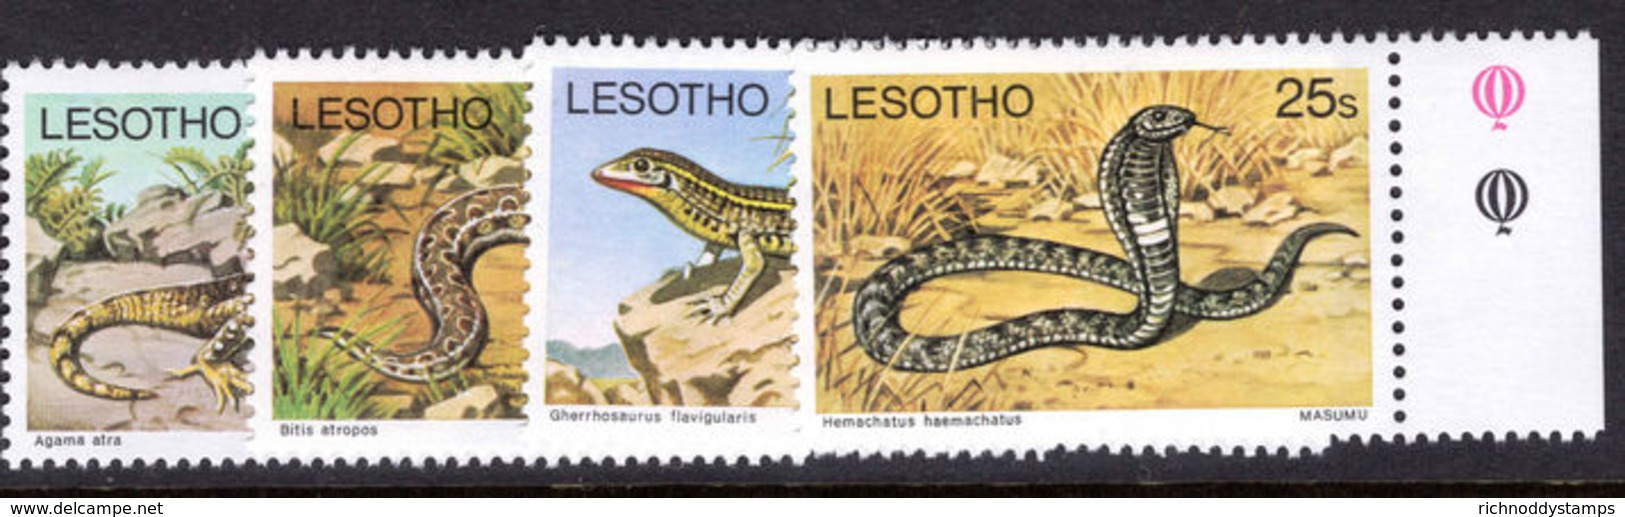 Lesotho 1979 Reptile Sideways Watermark Unmounted Mint. - Lesotho (1966-...)